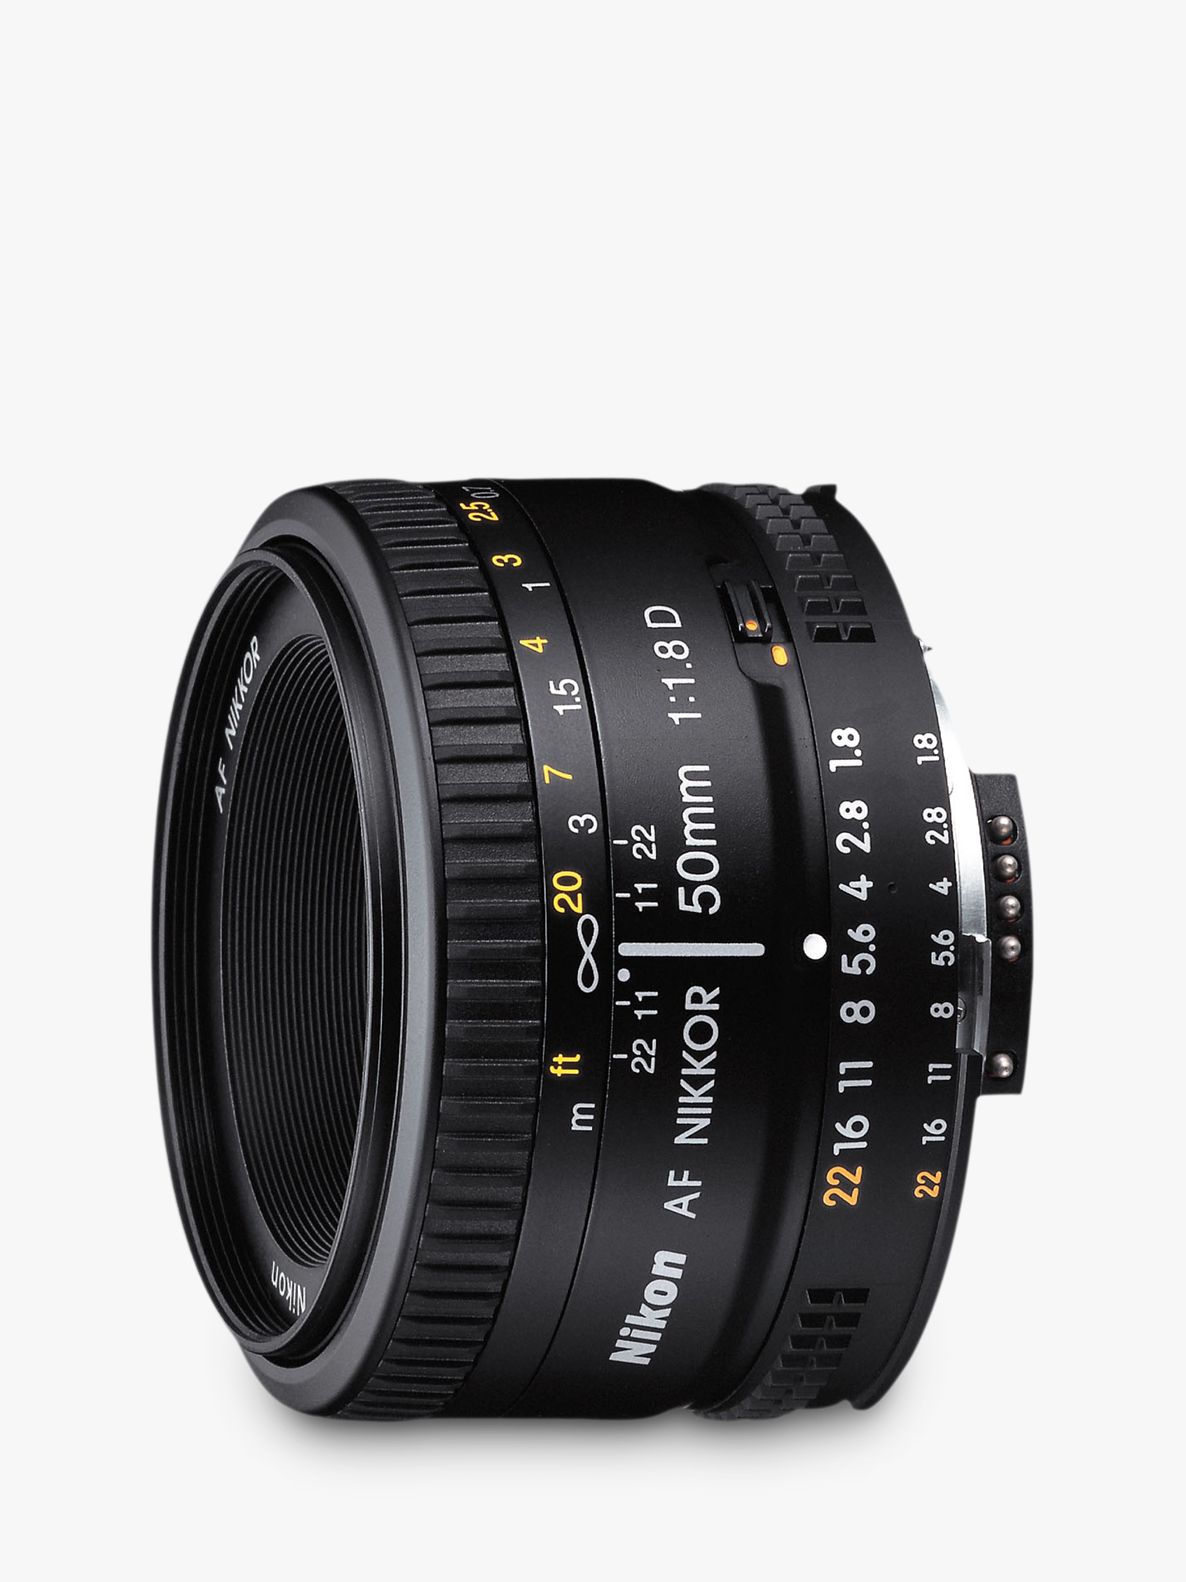 Nikon FX 50mm f/1.8D AF Standard Lens